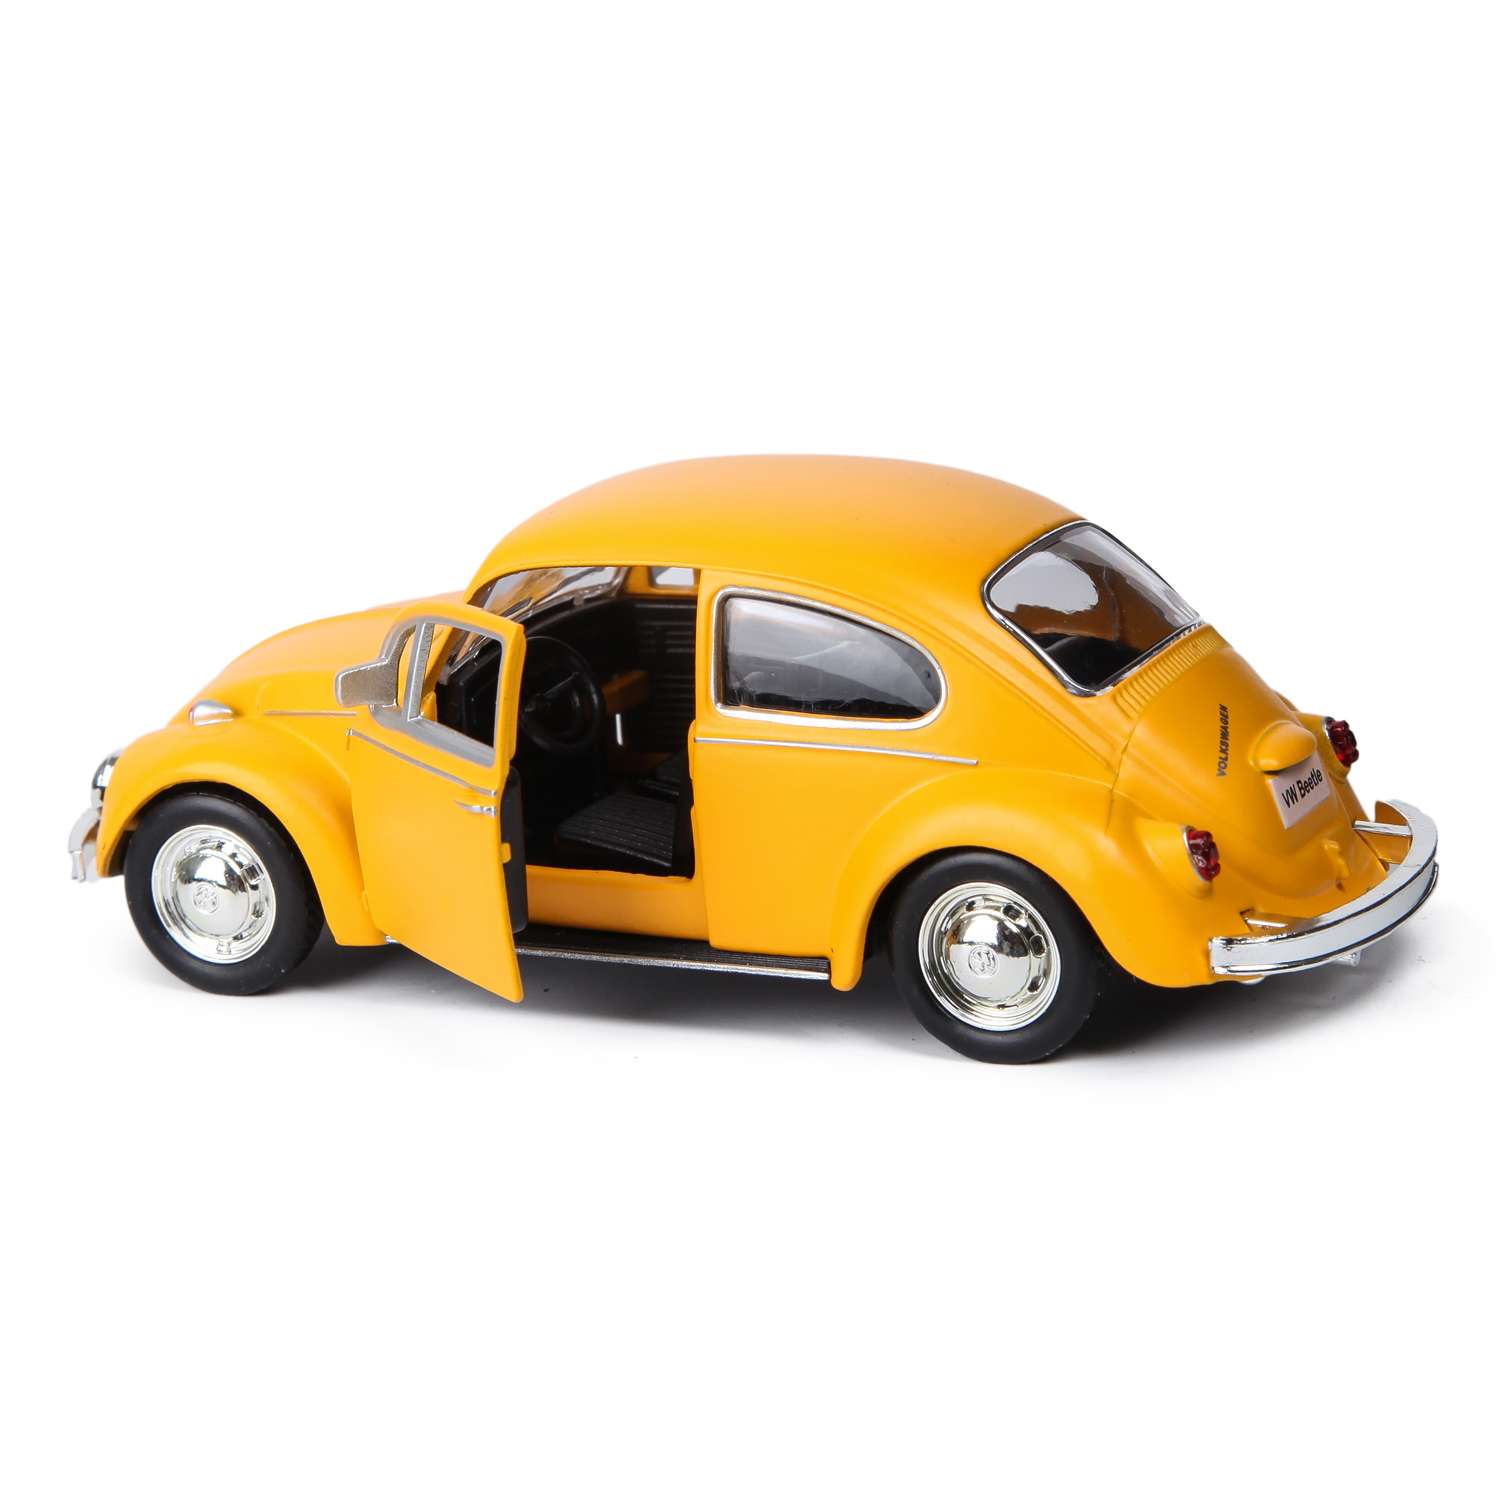 Машинка volkswagen. Машинка Mobicaro 1:32 Volkswagen 1967 Beetle. Volkswagen Beetle Mobicaro. Машинка Mobicaro 1:32 Volkswagen 2012 Beetle. Модель 1/32 Mobicaro 1967 Volkswagen Beetle.